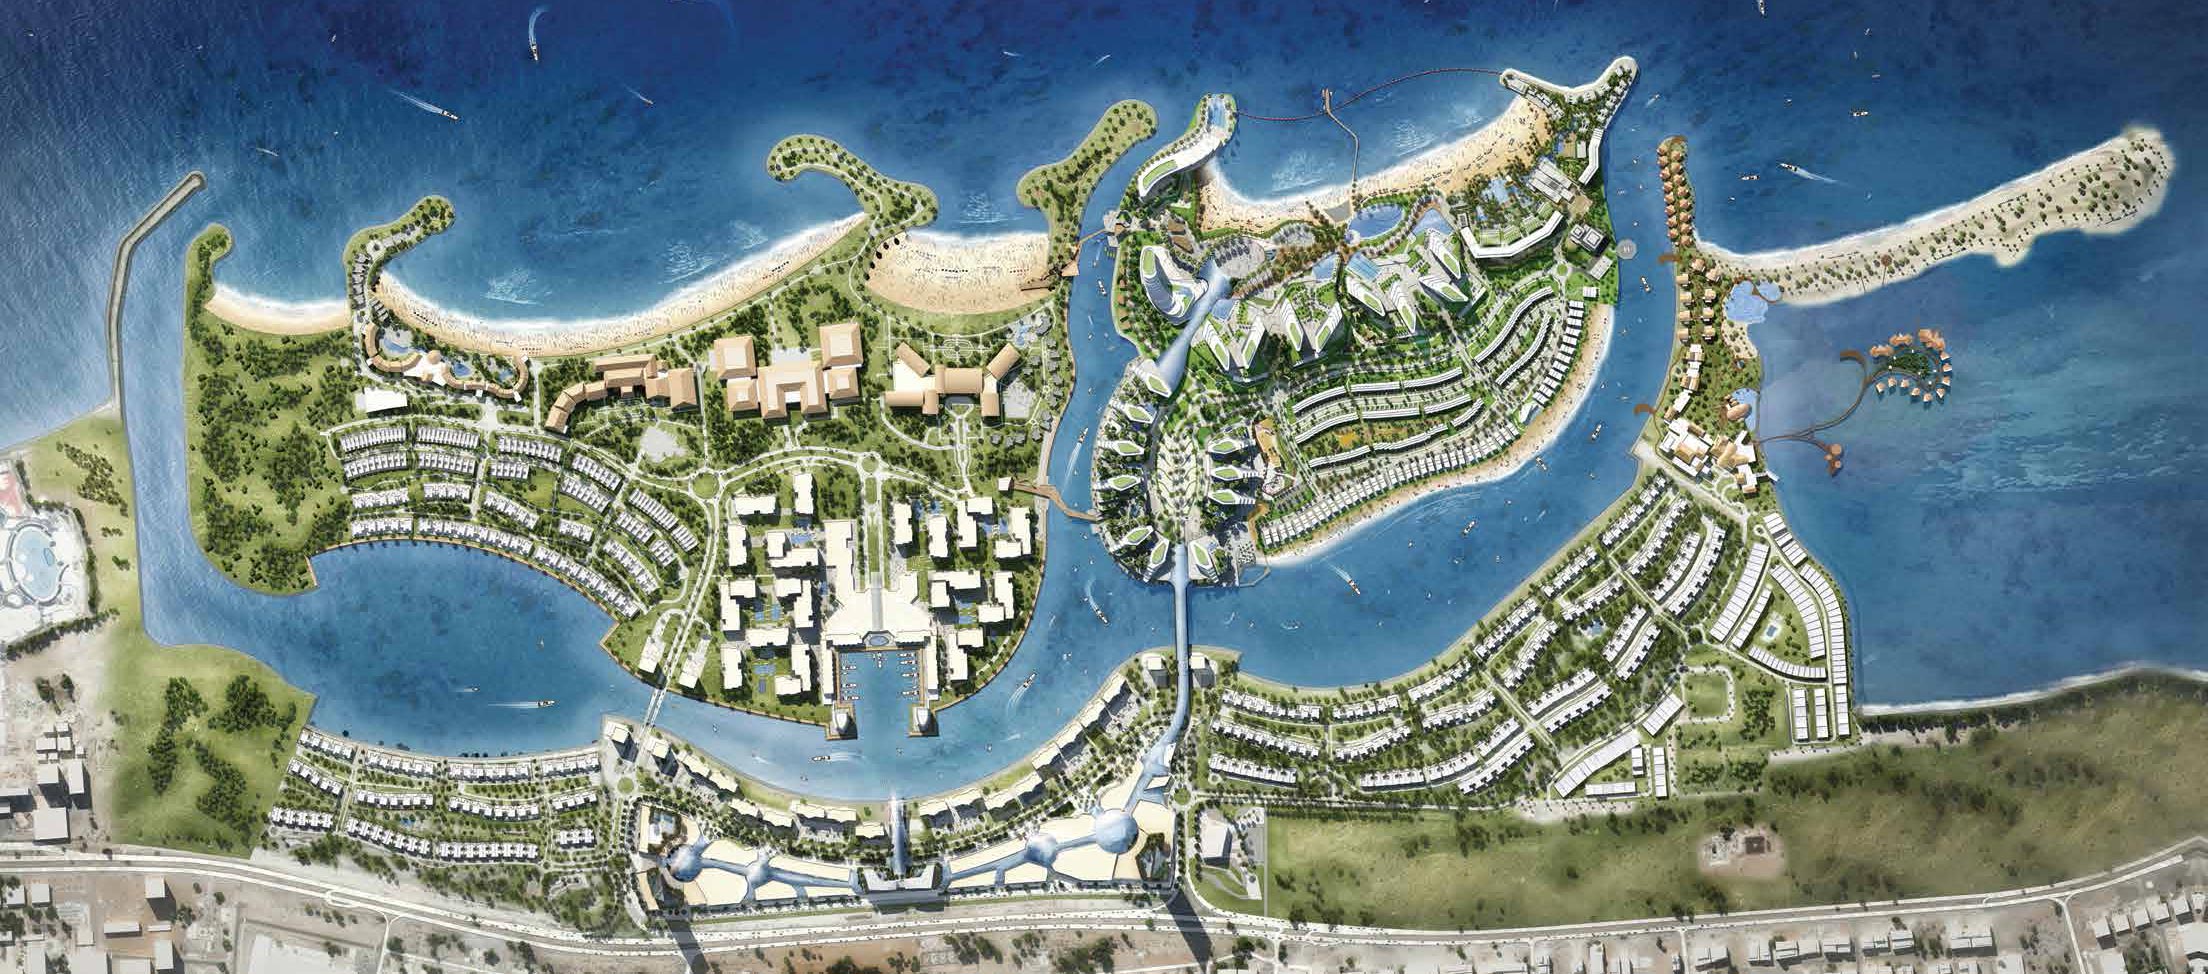 Bay Residences от RAK Properties на острове Hayat Island, Рас-эль-Хайма – Апартаменты в ОАЭ на продажу